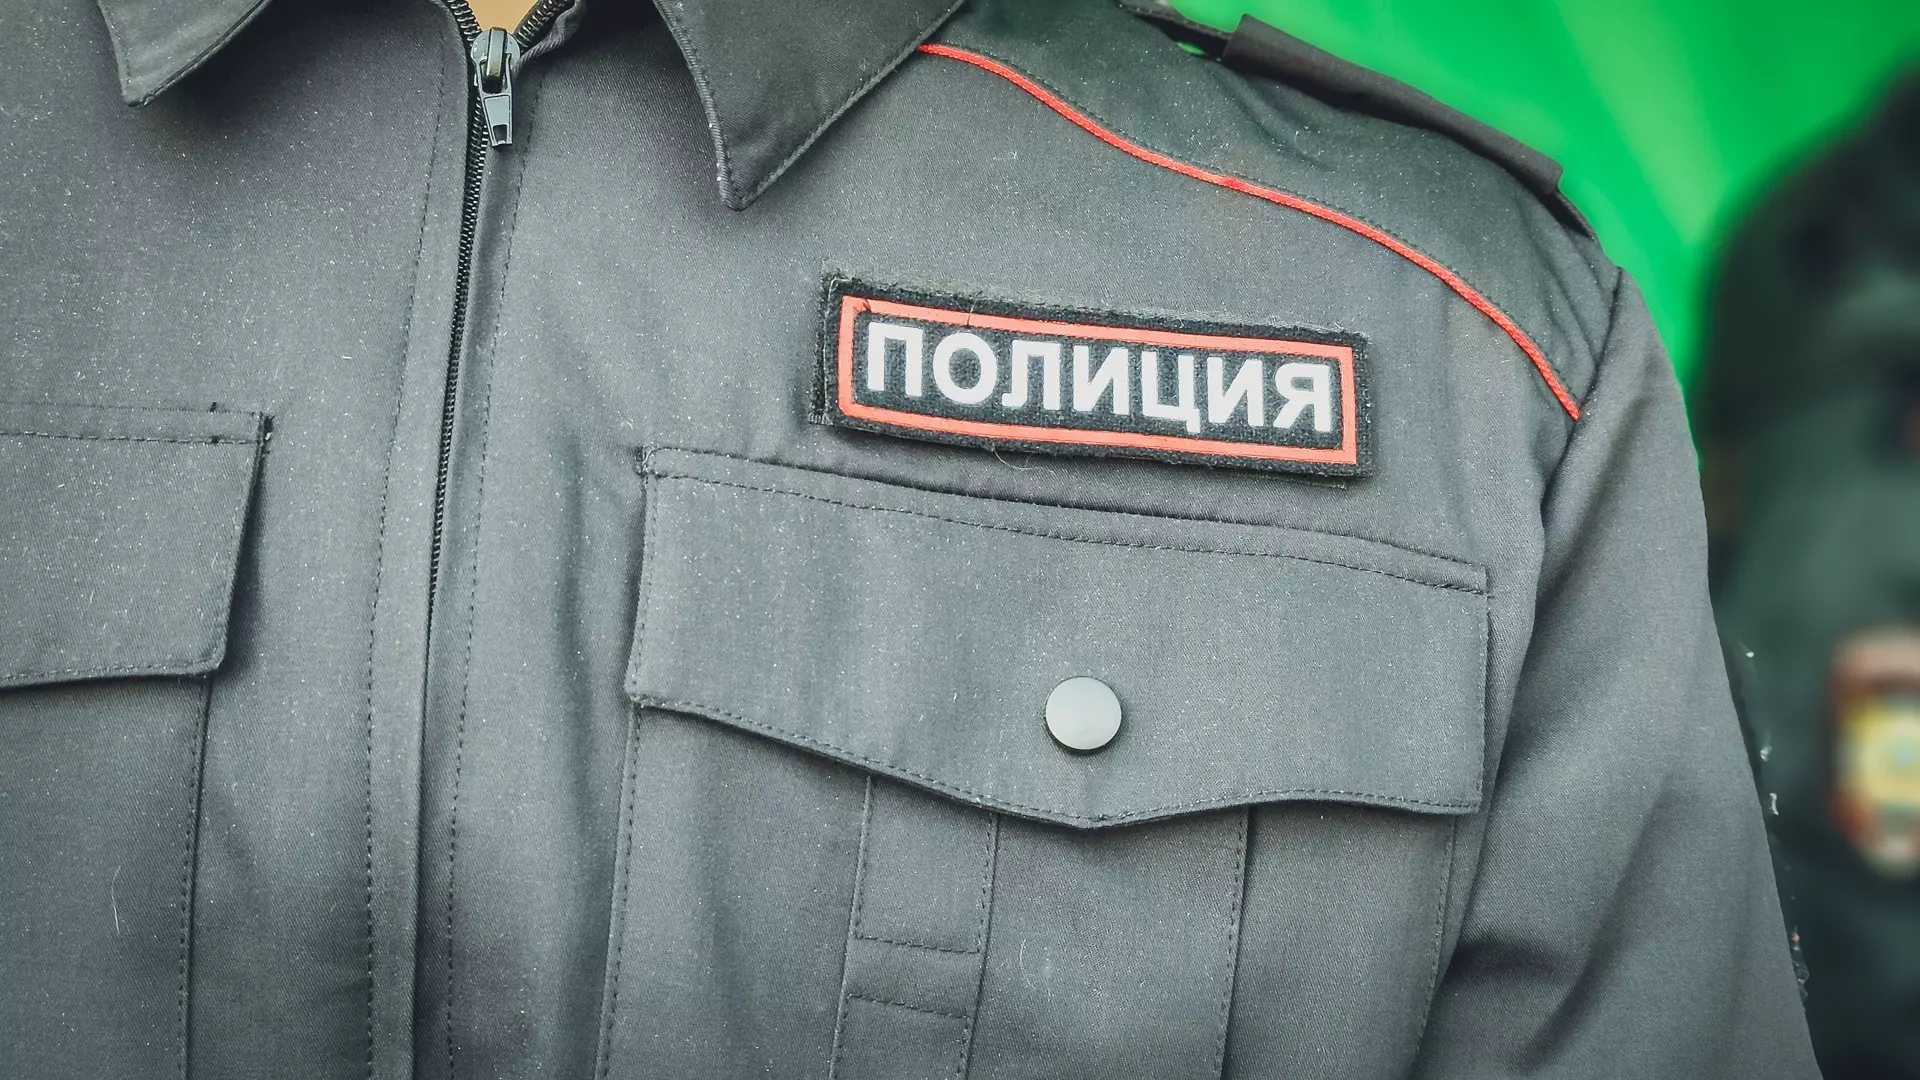 В Каменске-Уральском найден труп на парковке поликлиники